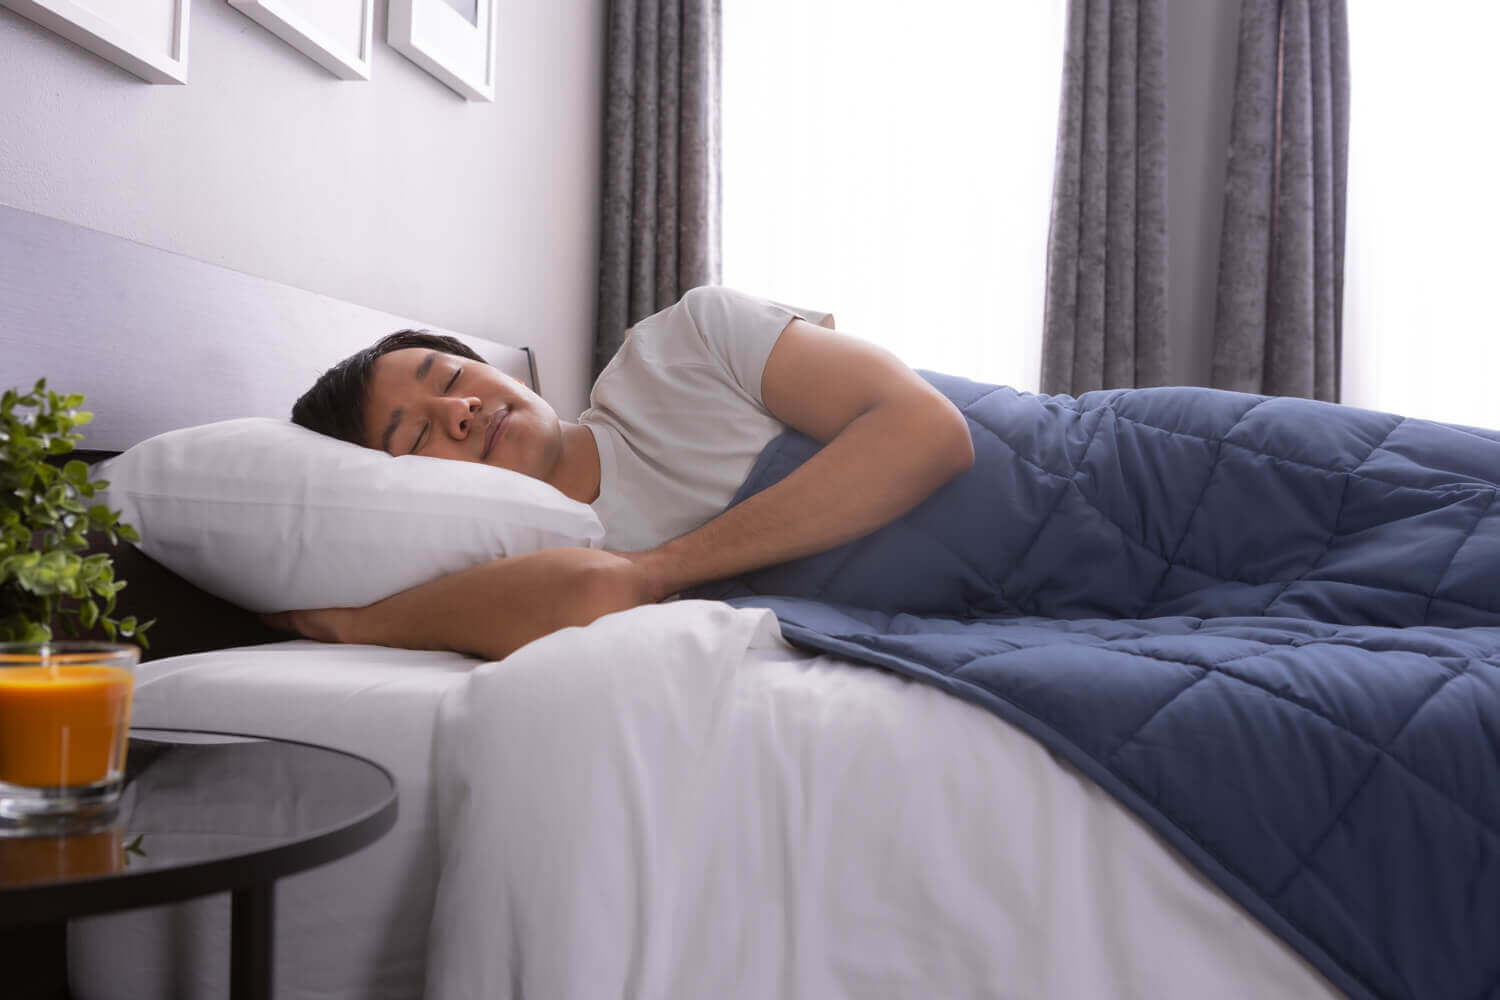 Un homme repose paisiblement dans son lit, avec une couverture lestée étendue sur son corps.